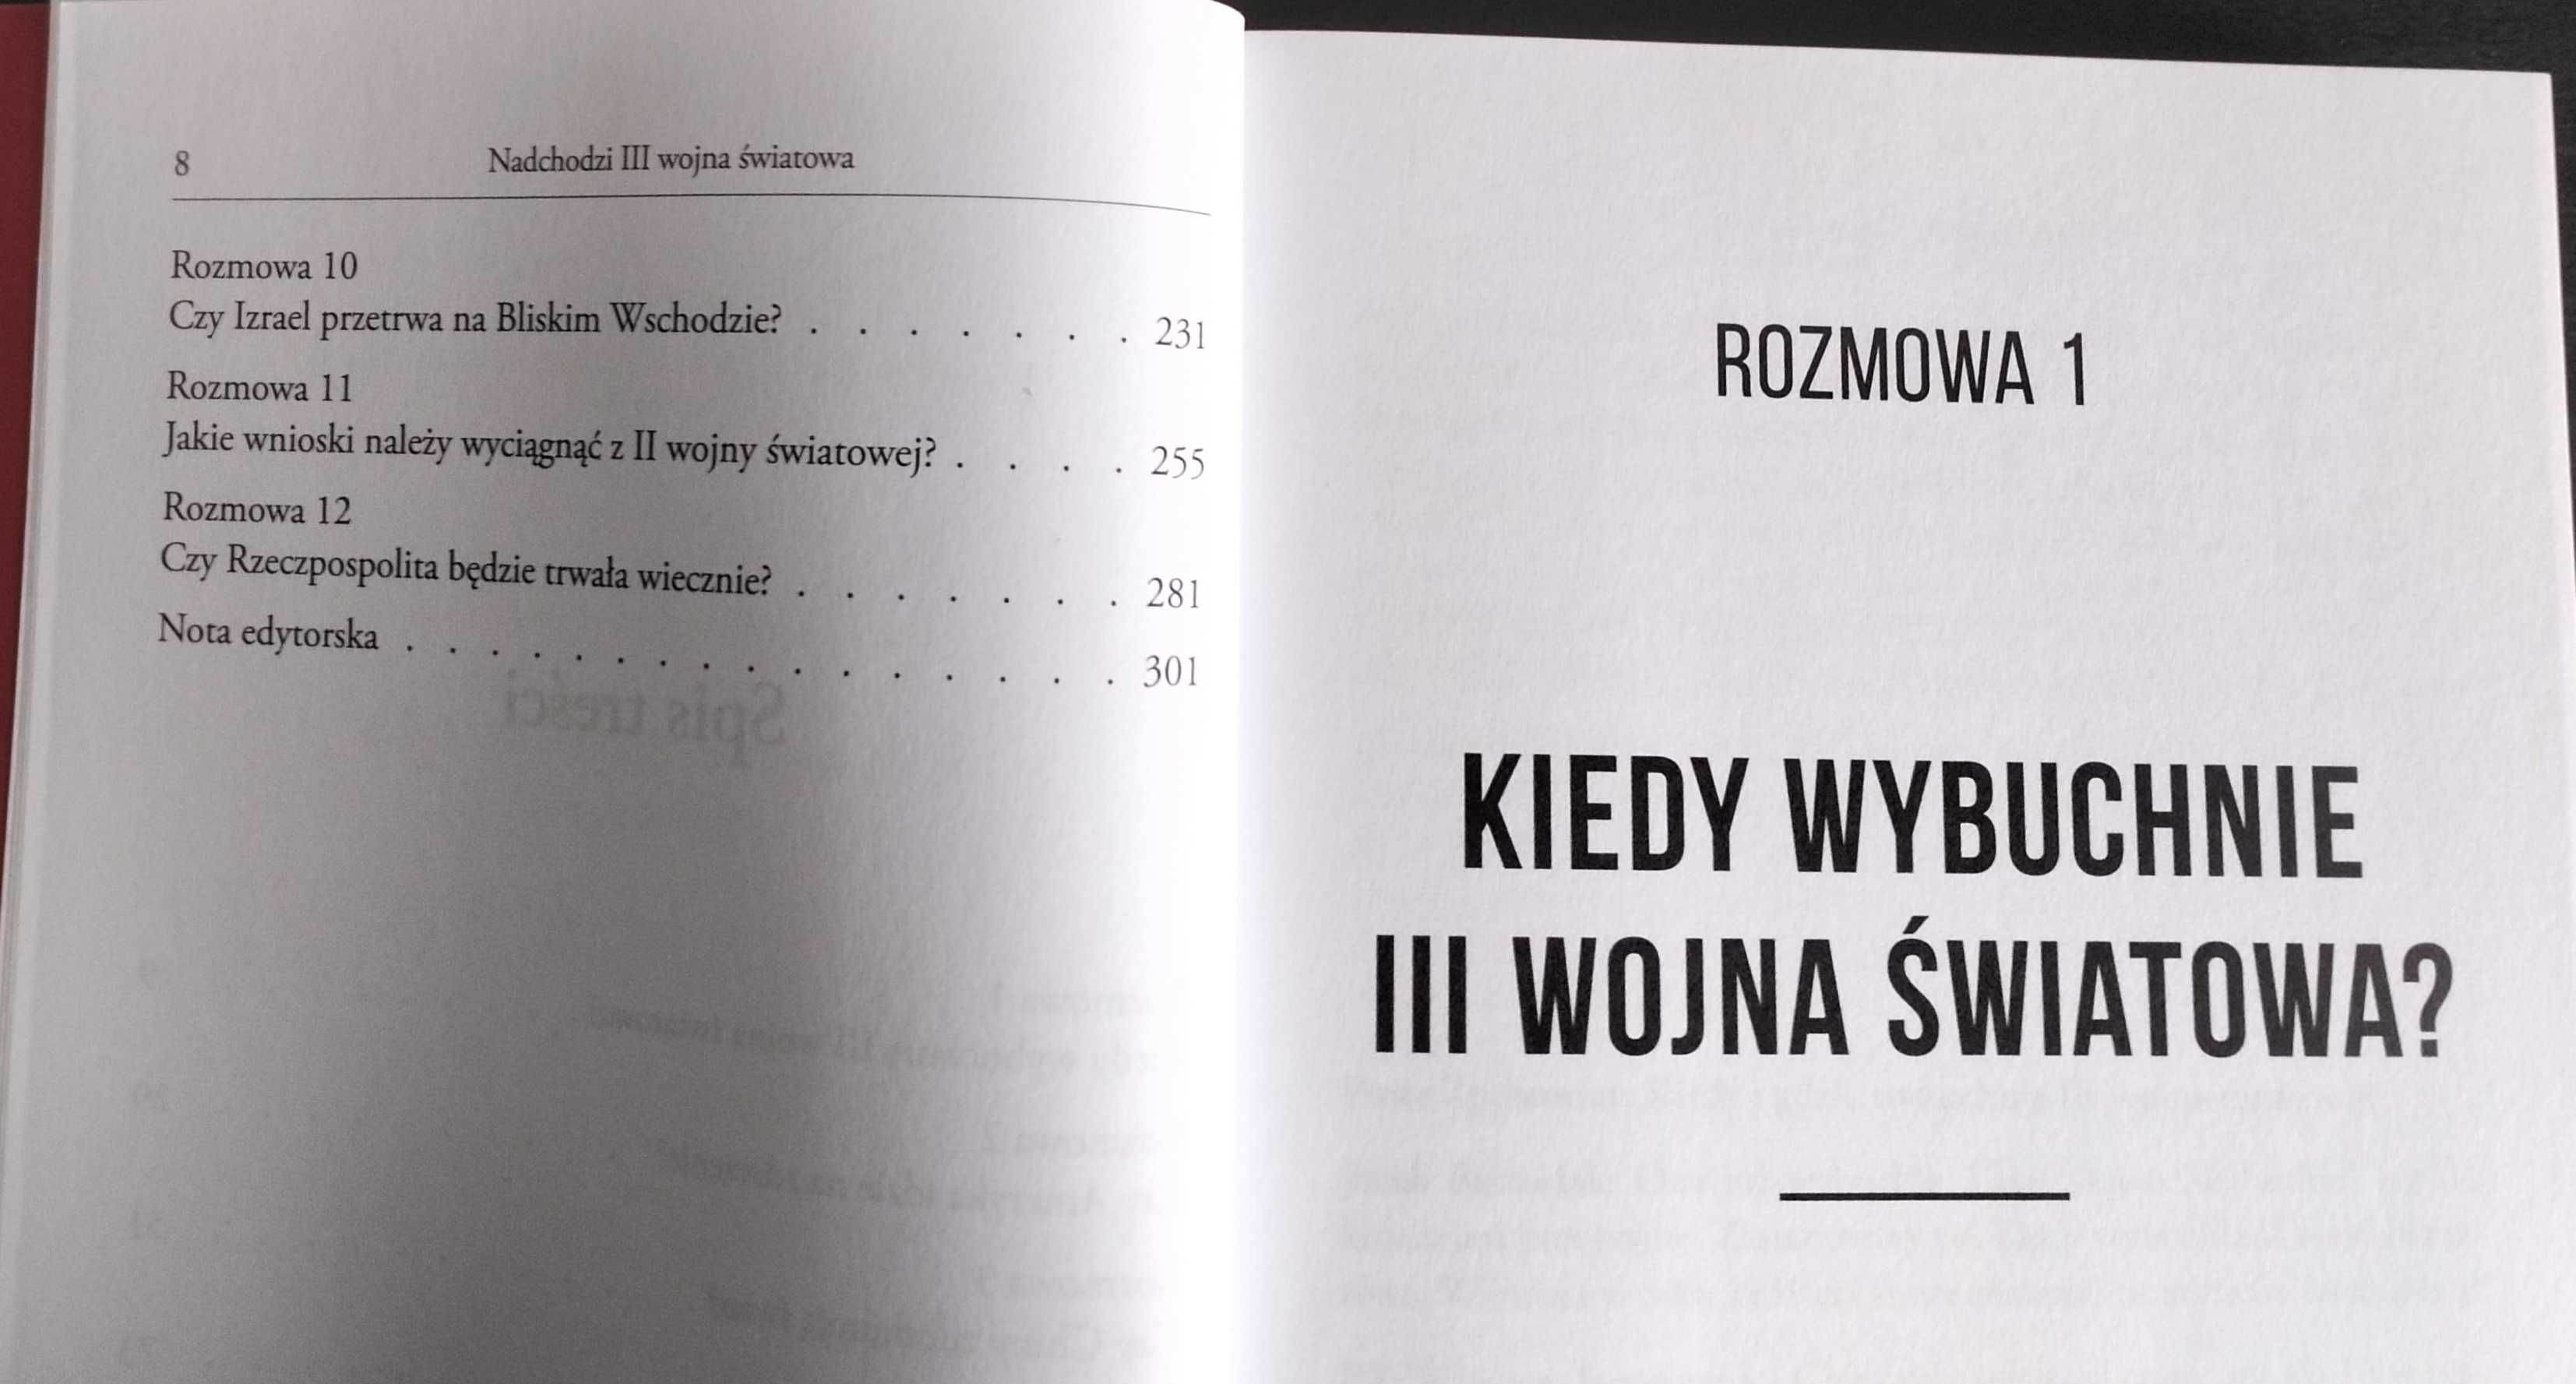 NADCHODZI III WOJNA ŚWIATOWA Jacek Bartosiak Piotr Zychowicz